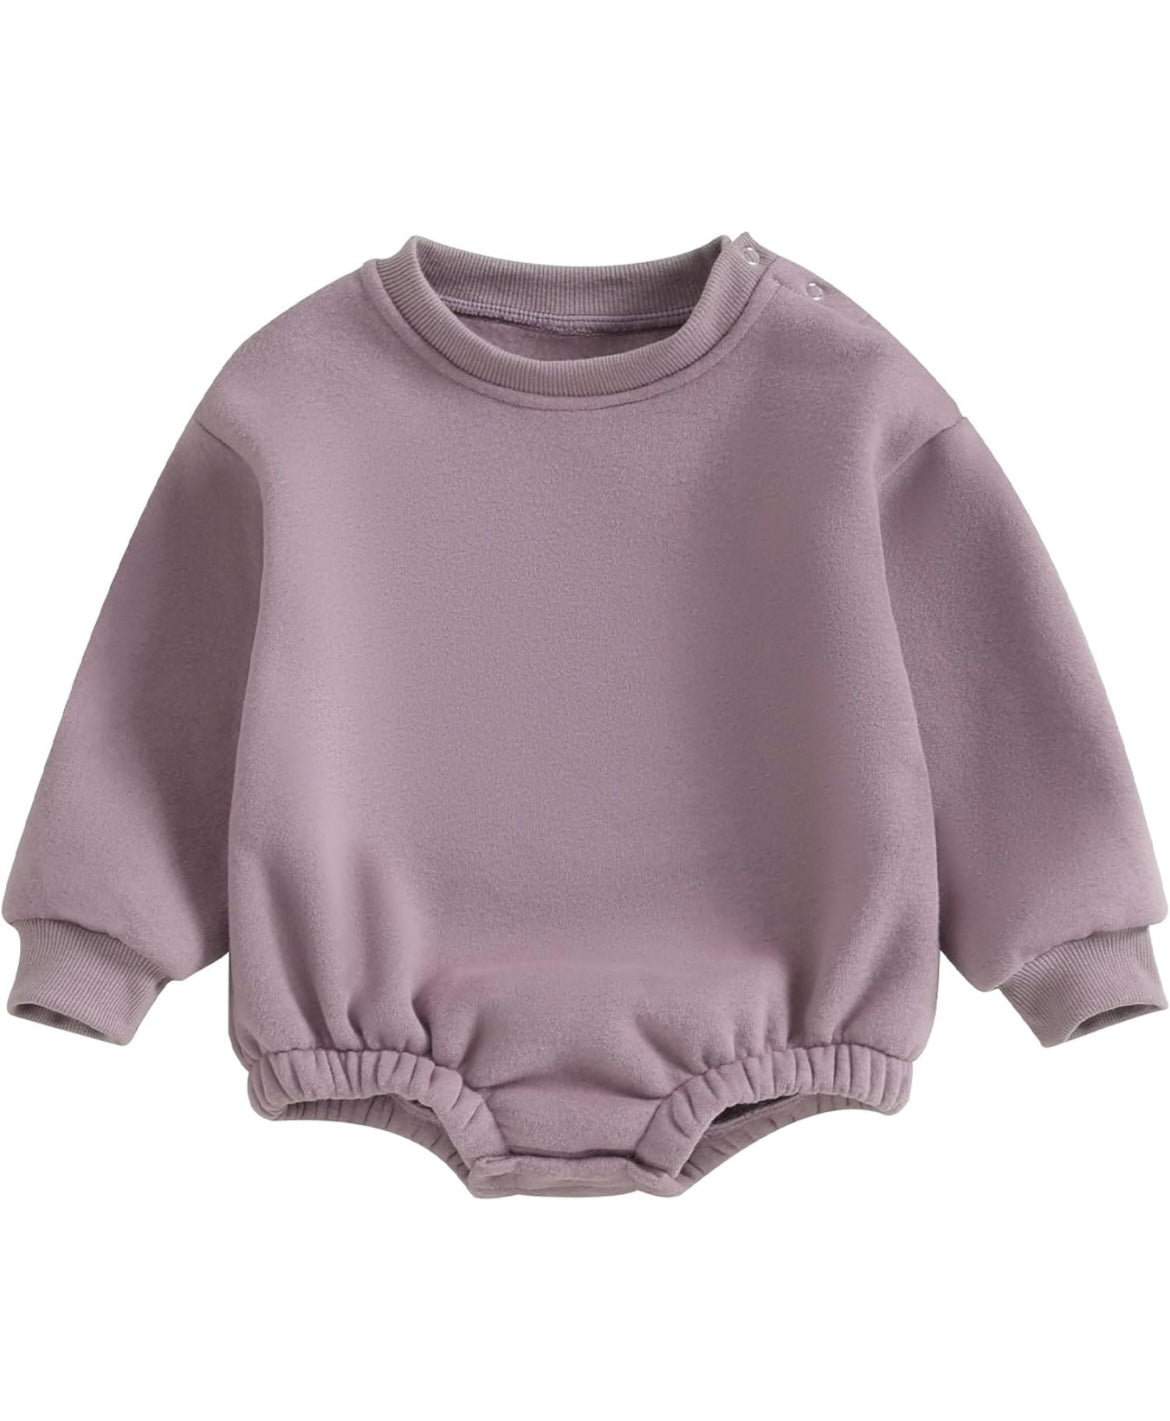 Custom Sweatshirt Onesie